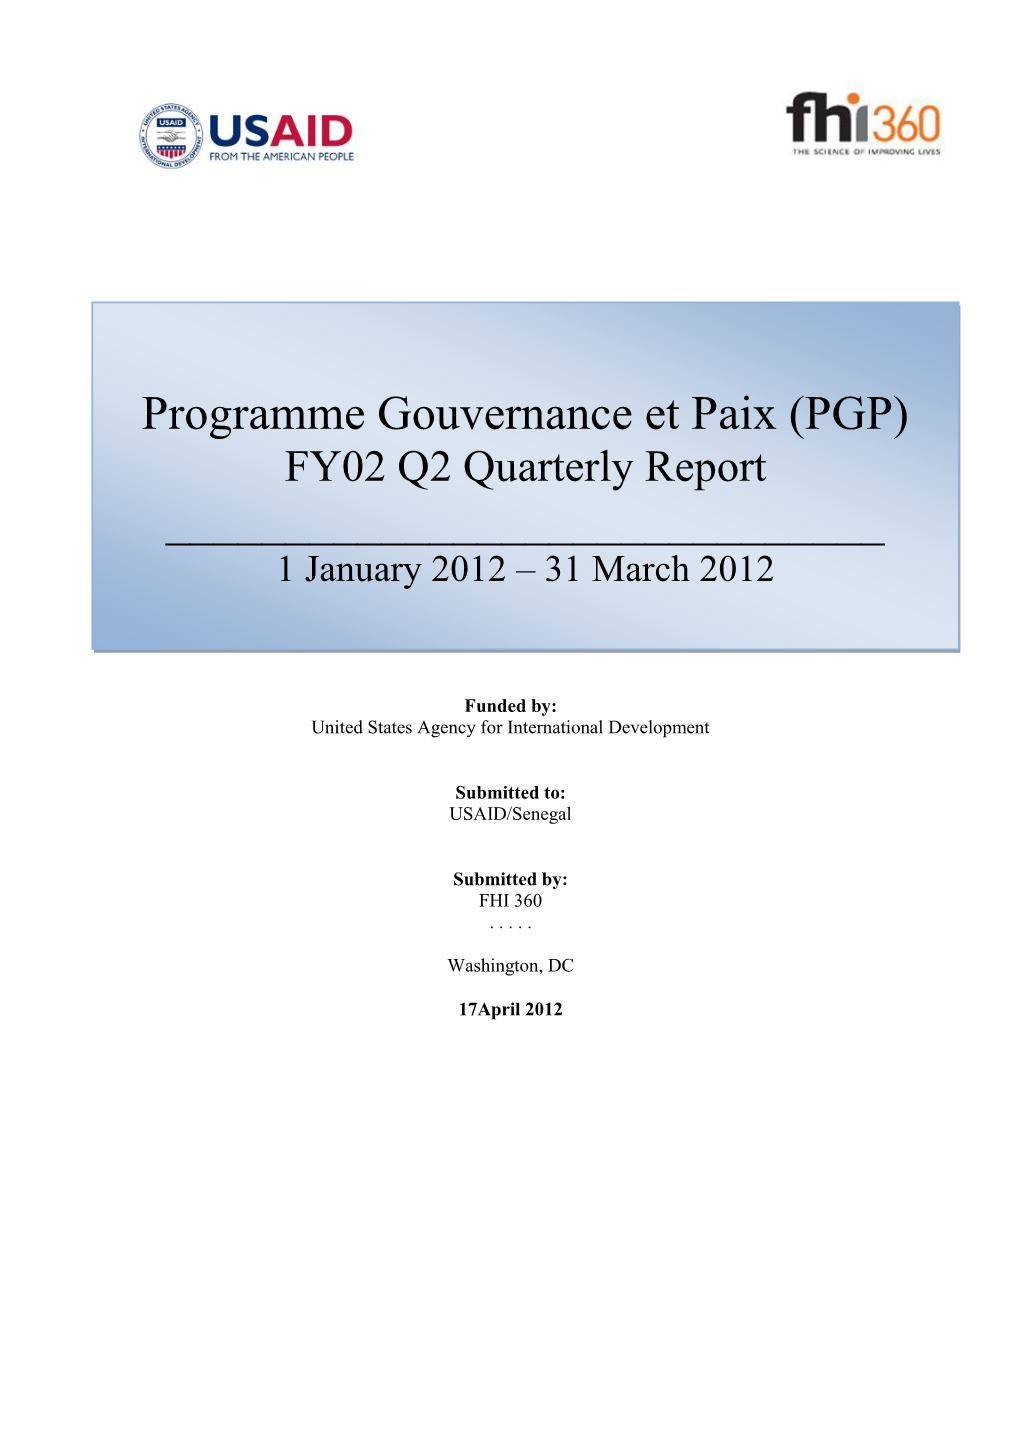 Programme Gouvernance Et Paix (PGP)